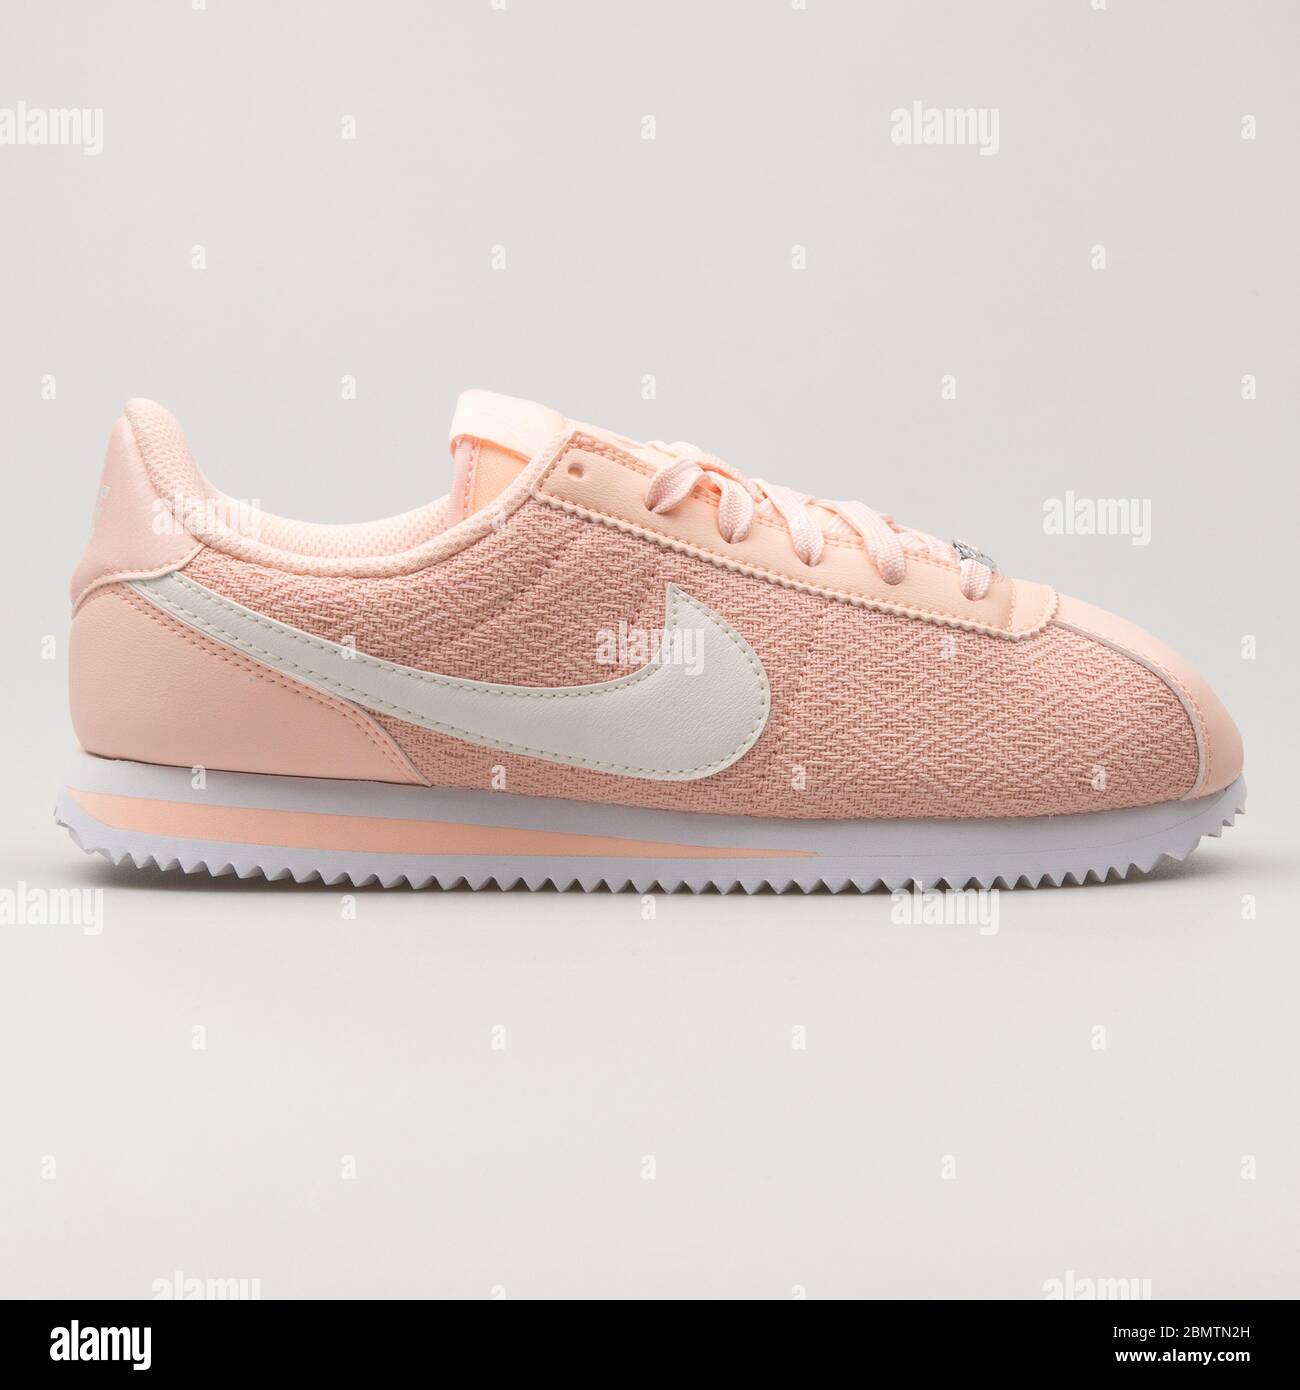 VIENA, AUSTRIA - 19 DE FEBRERO de 2018: Nike Cortez Basic Textile Suede  sneakers en color rosa y blanco sobre fondo blanco Fotografía de stock -  Alamy